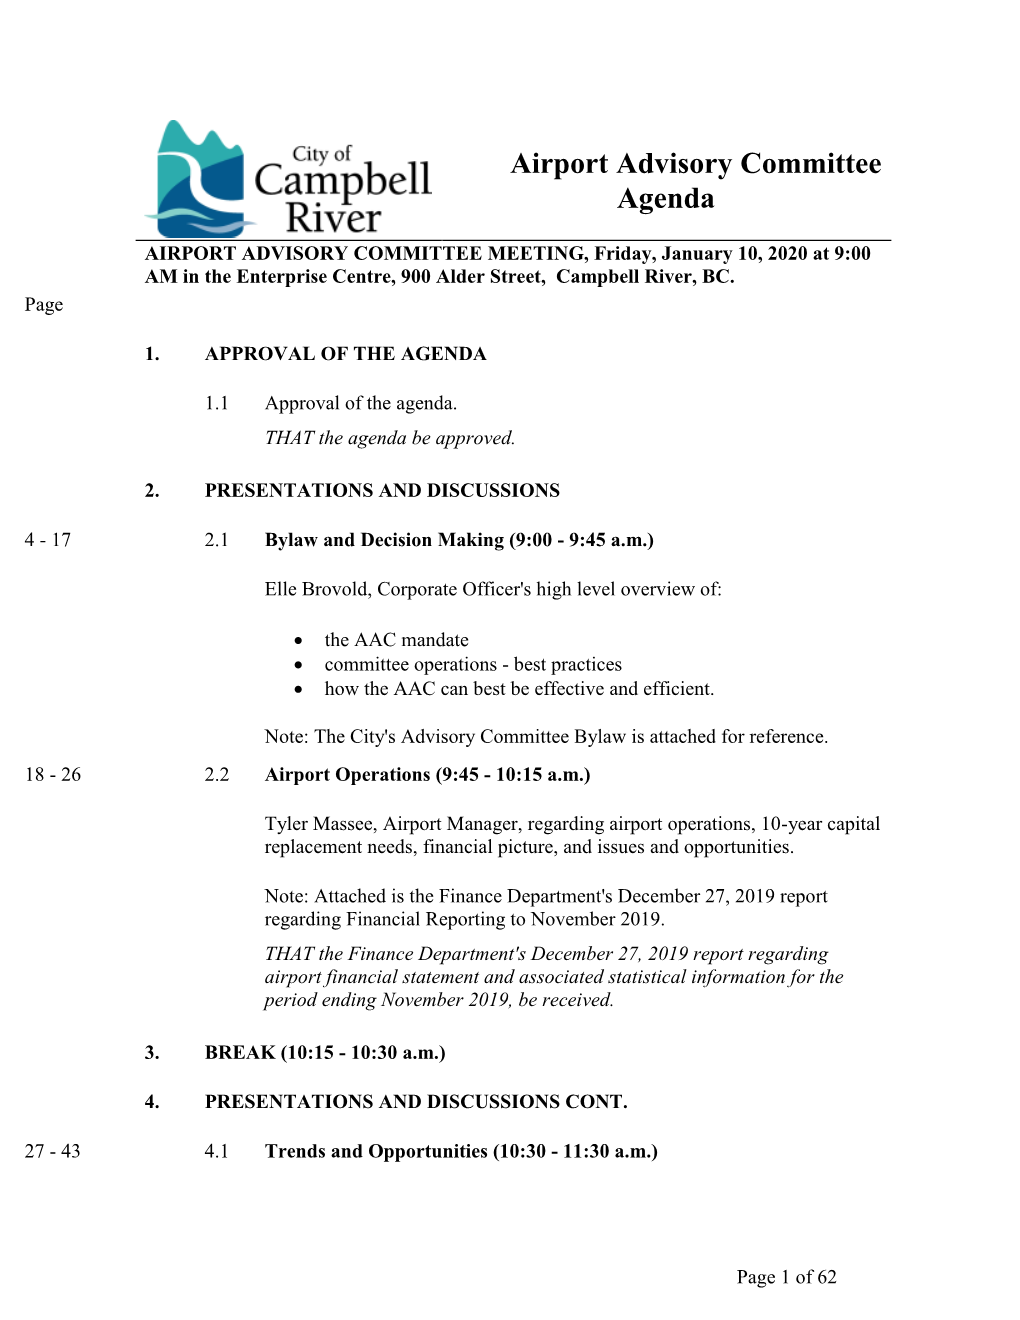 Jan 10-20 Airport Advisory Committee